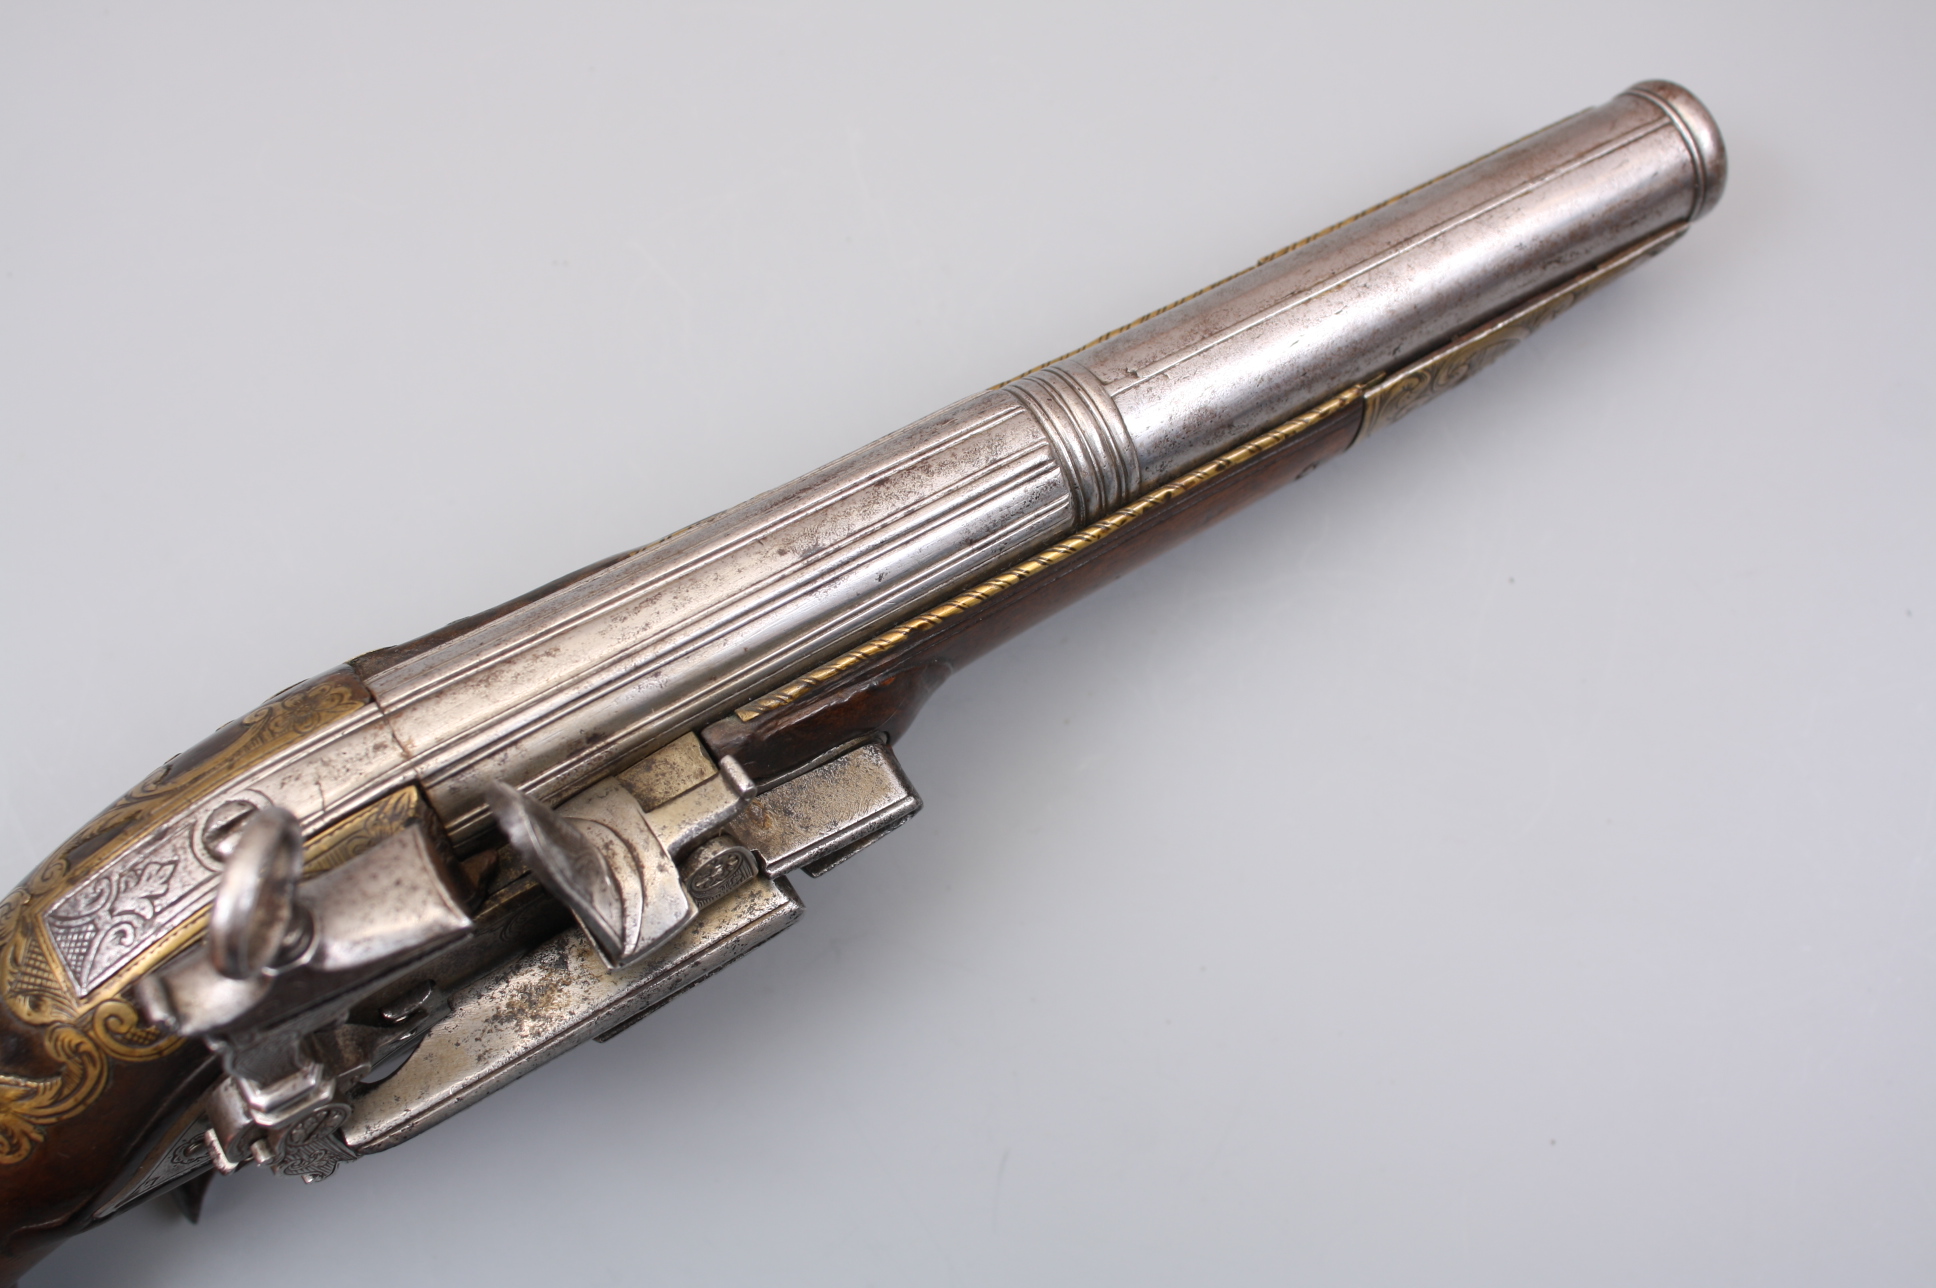 Красивый кремневый пистолет  1800 год, Италия, Неаполь.